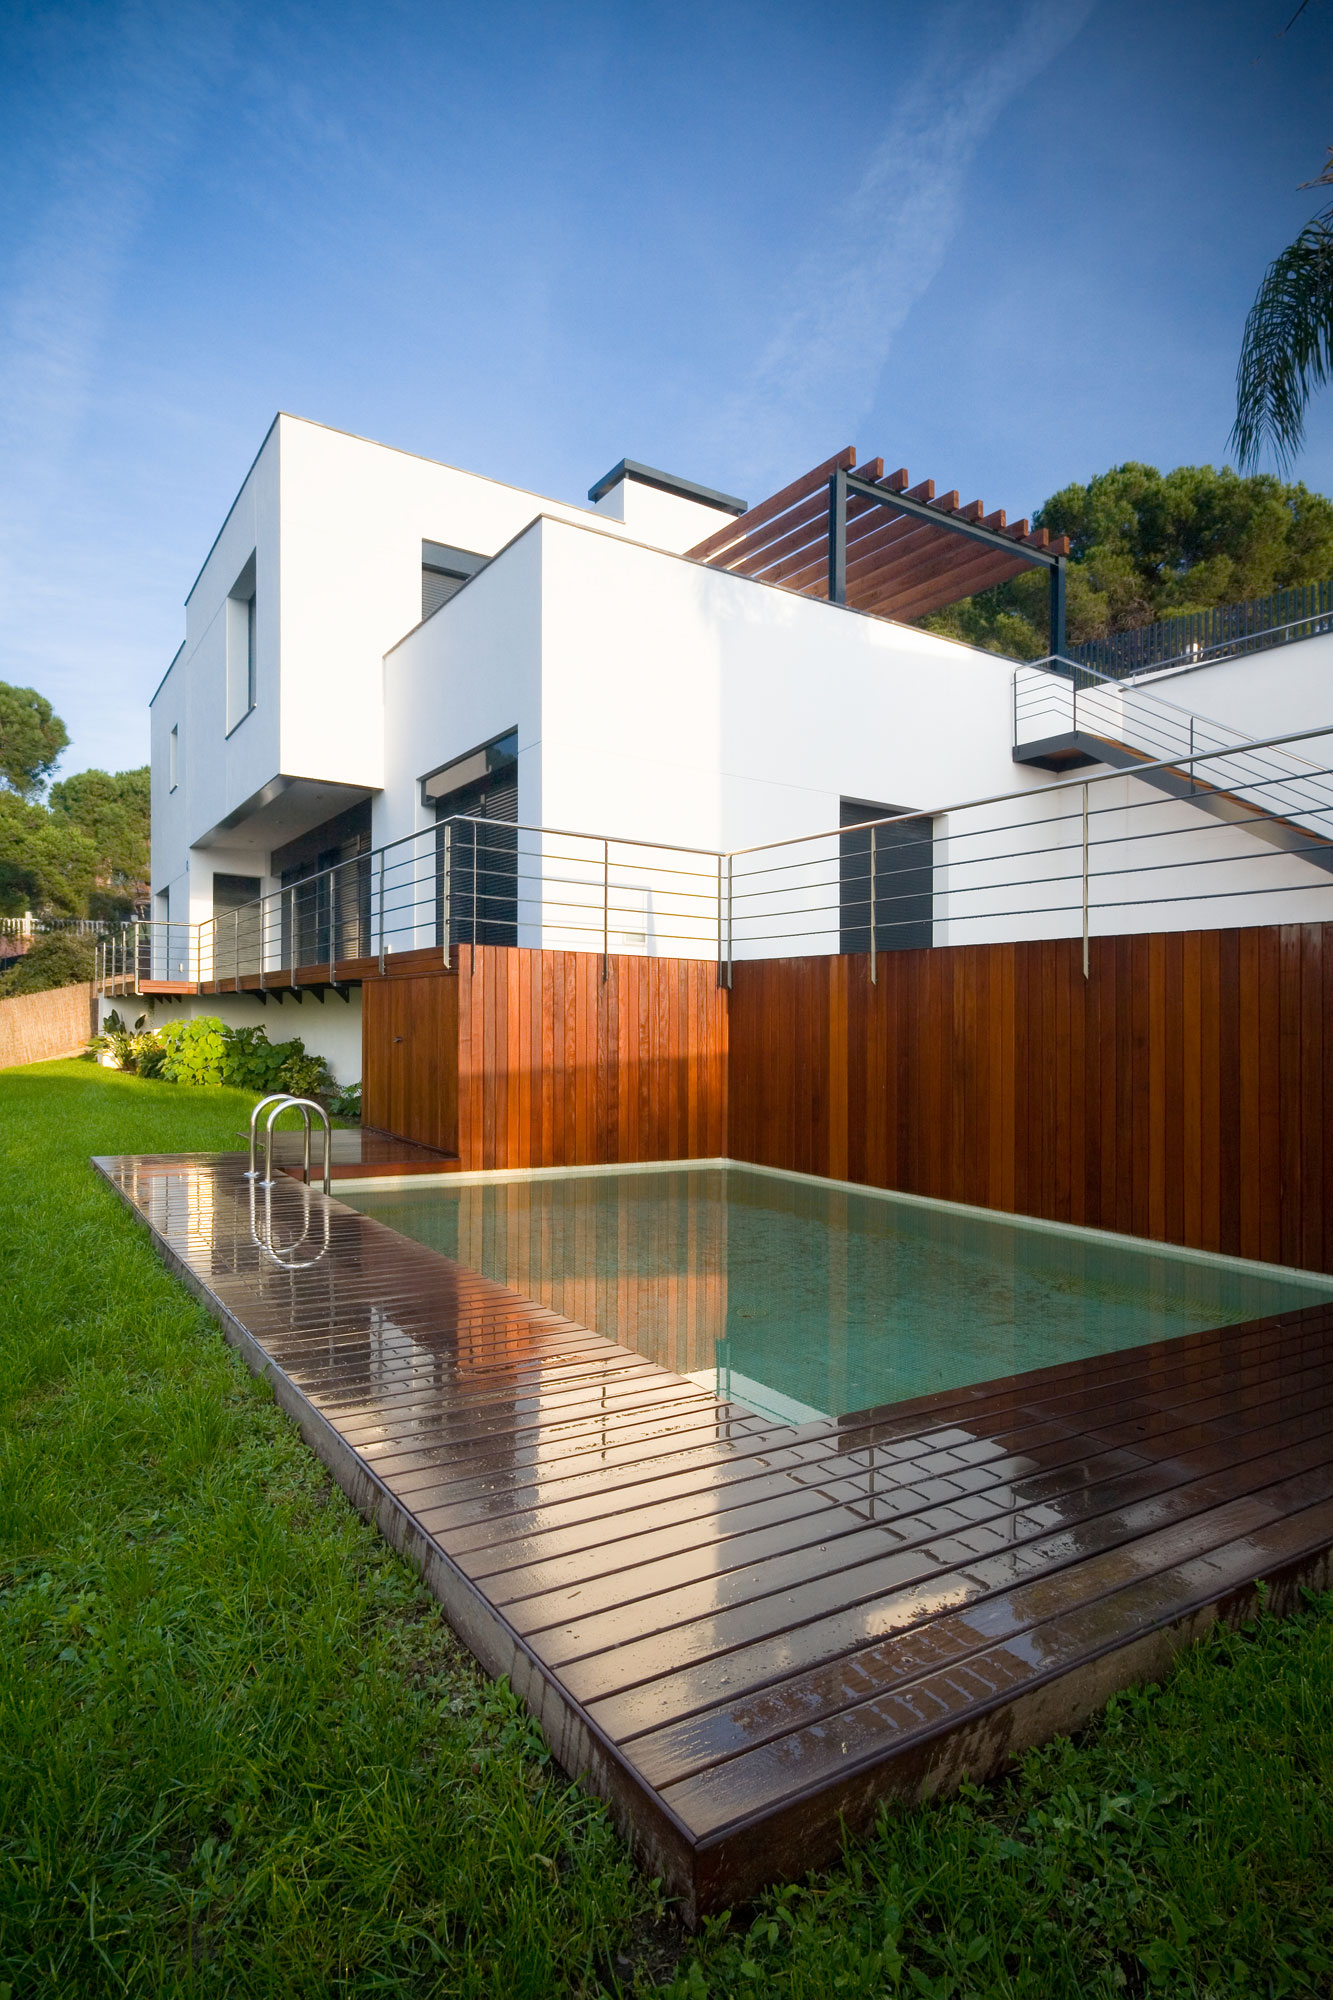 Casa A, moderna vivienda unifamiliar, diseñada por Mehr Studio